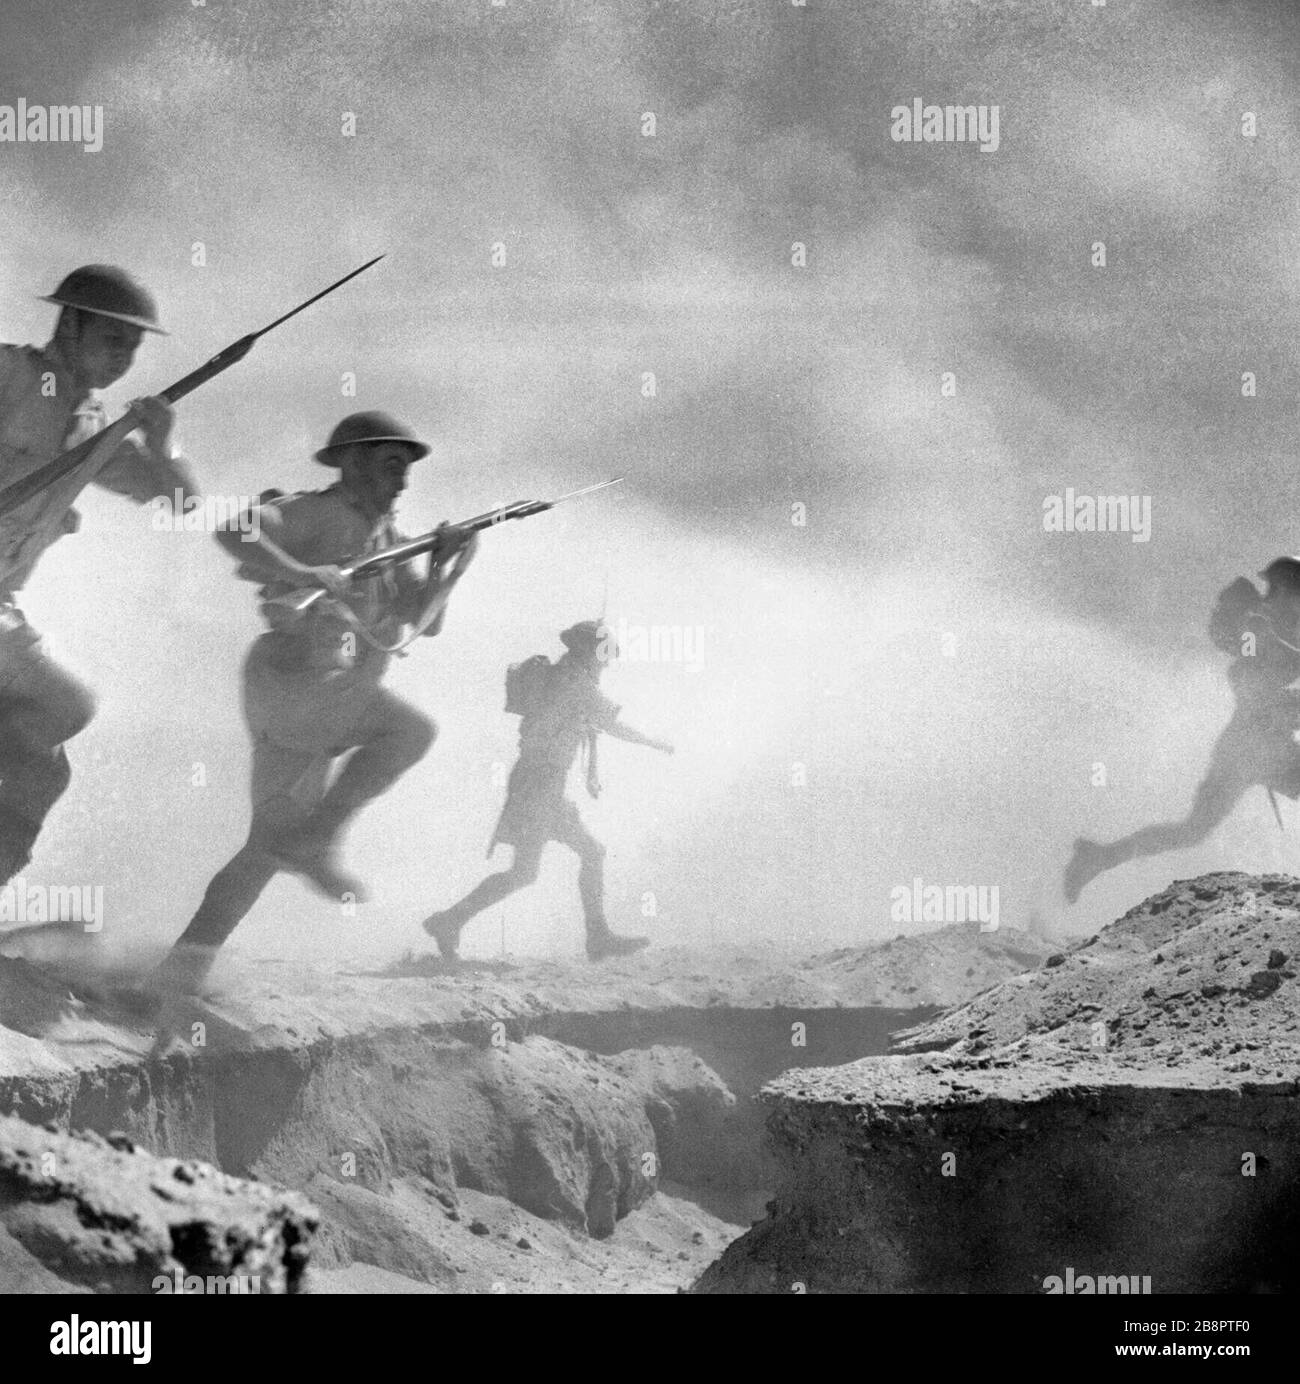 El Alamein 1942 : l'infanterie britannique avance à travers la poussière et la fumée de la bataille. 24 octobre 1942 Banque D'Images